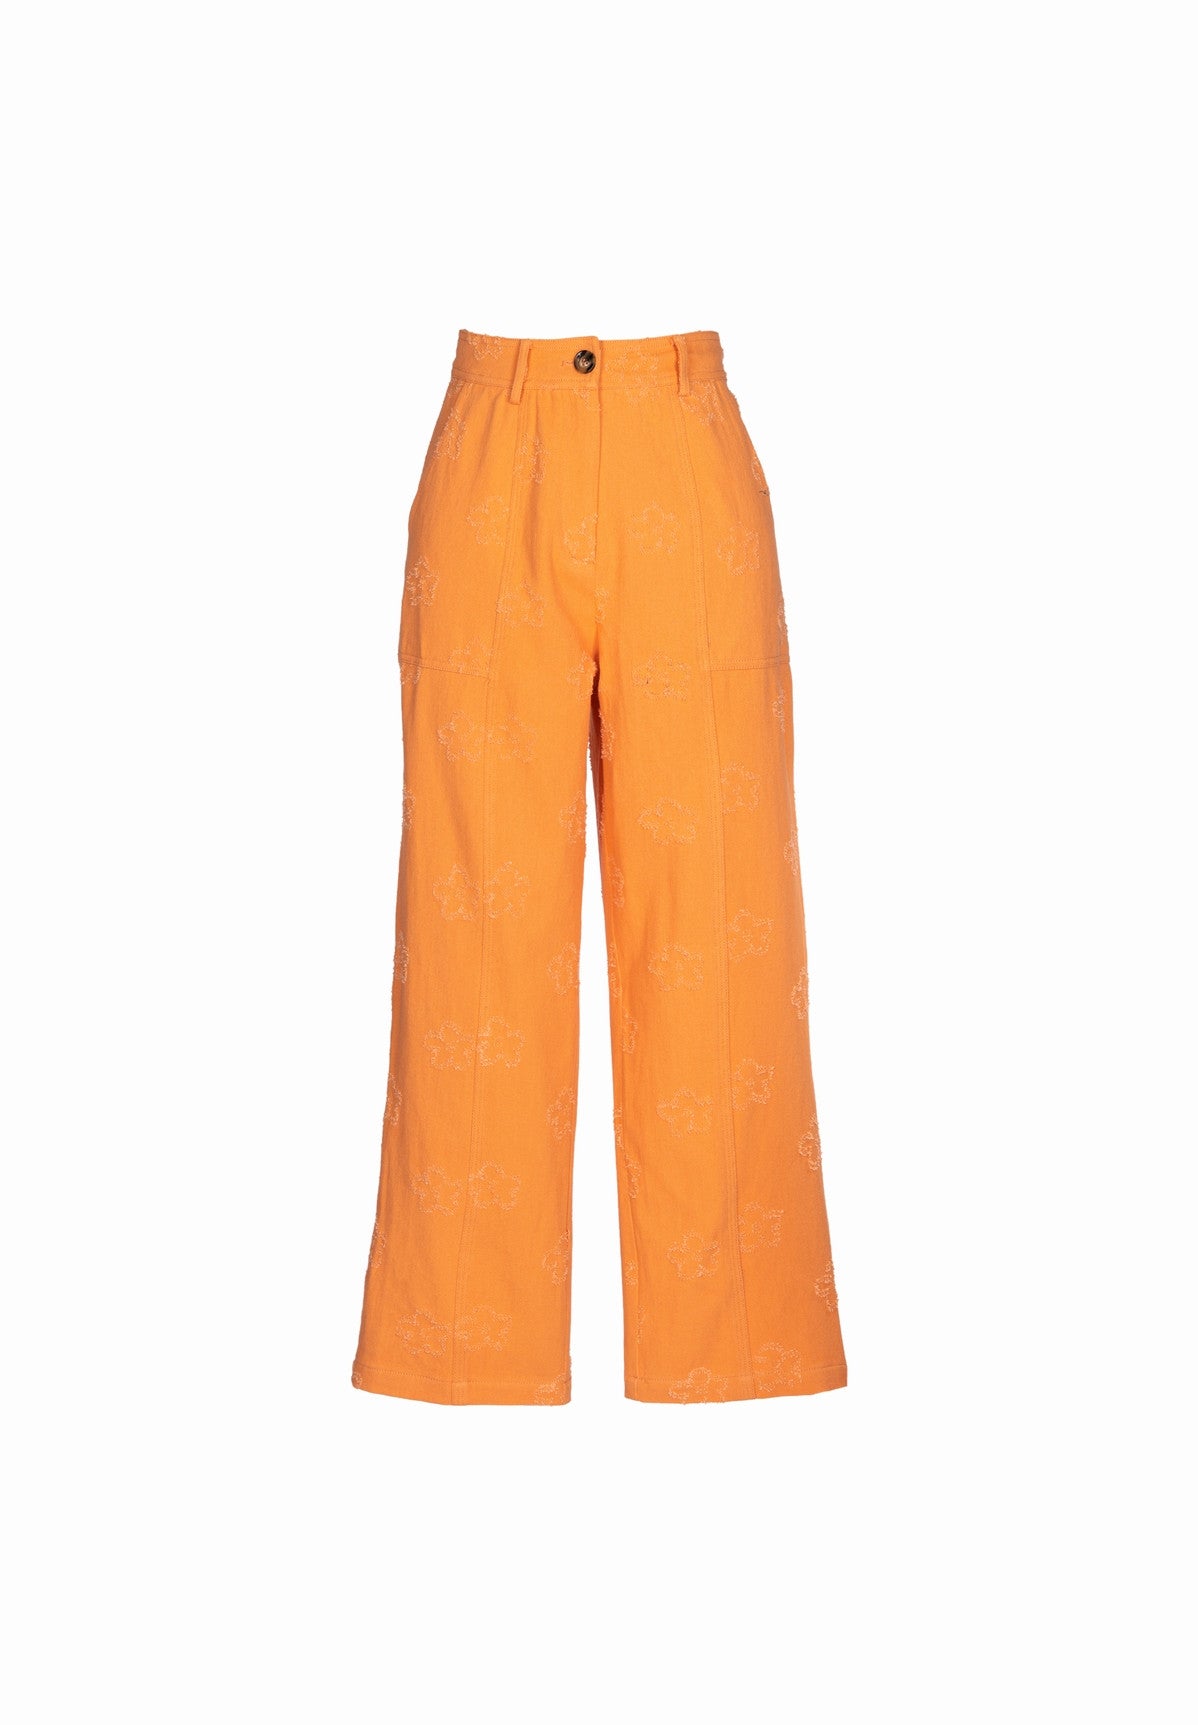 Pantalon en coton PYRENEE orange